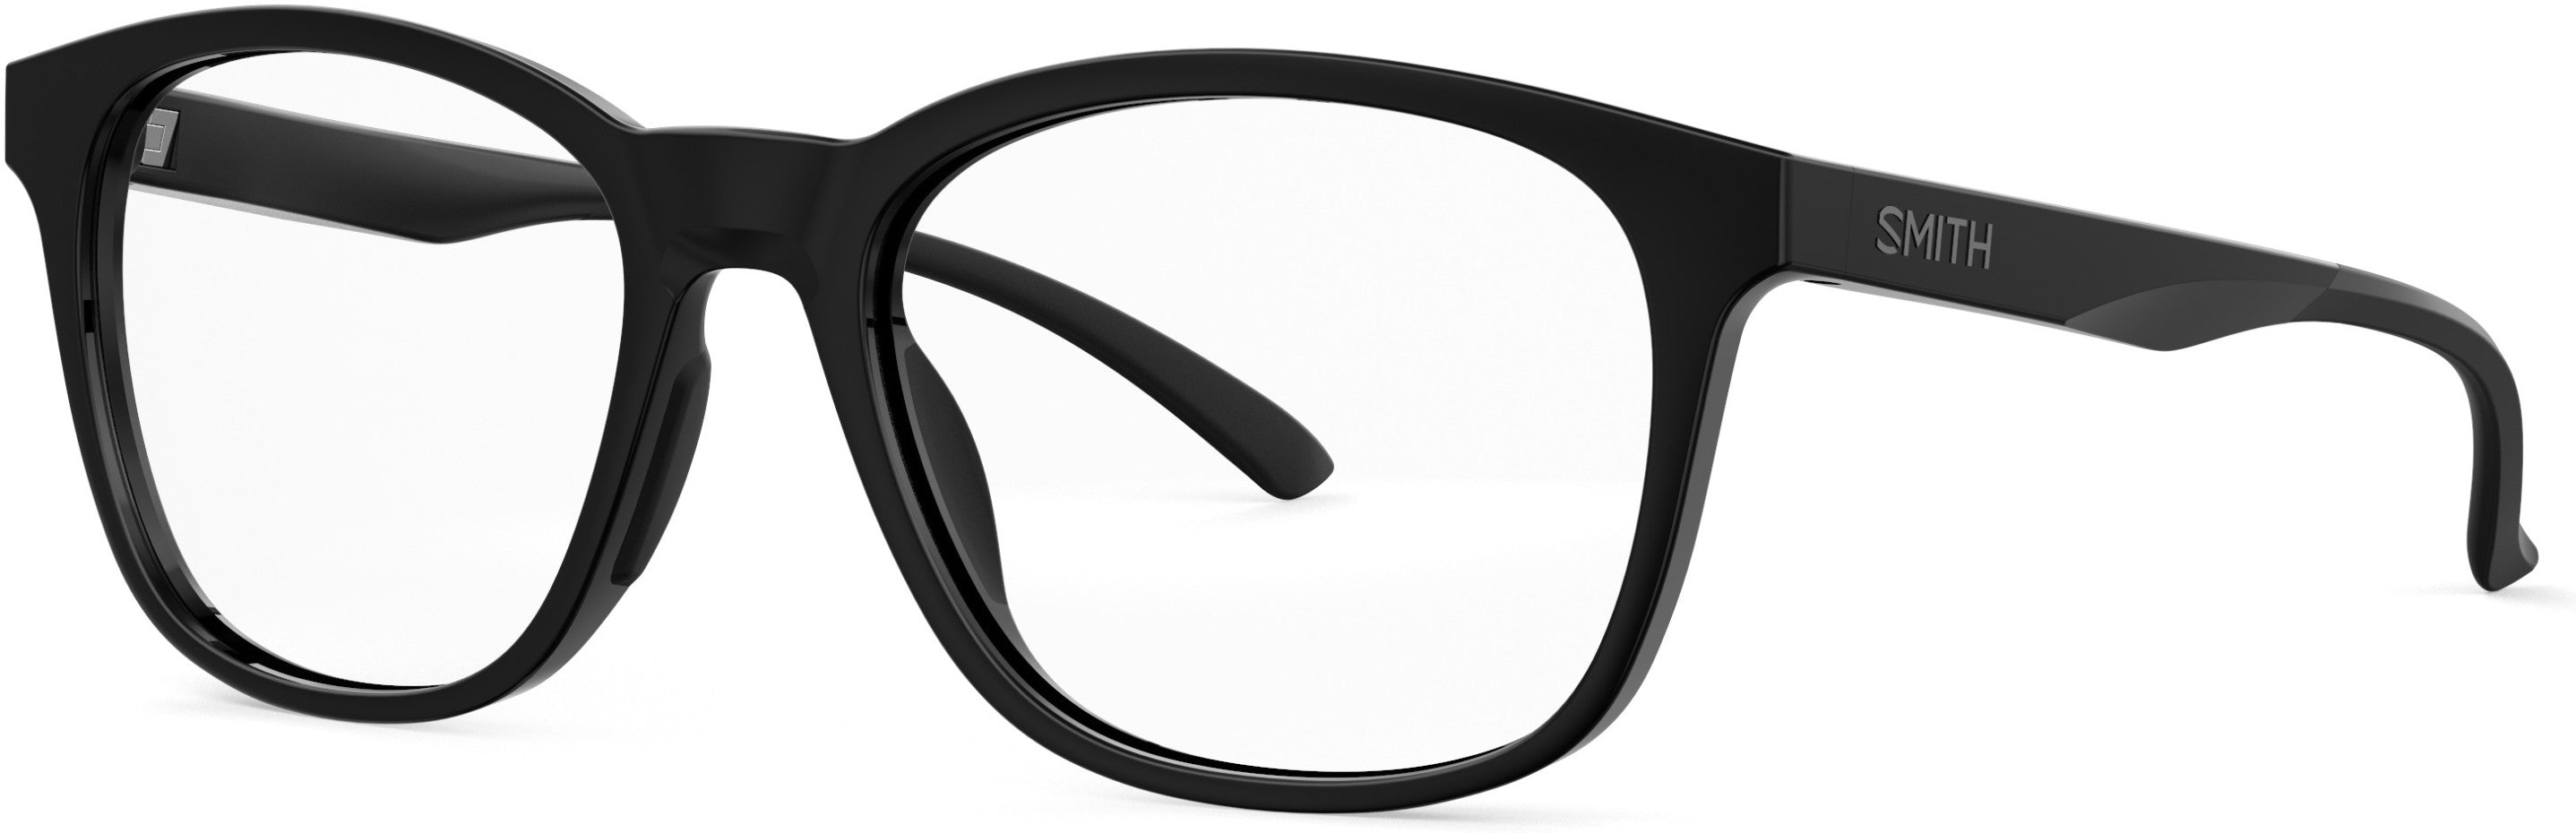 Smith Southside Rectangular Eyeglasses 0807-0807  Black (00 Demo Lens)